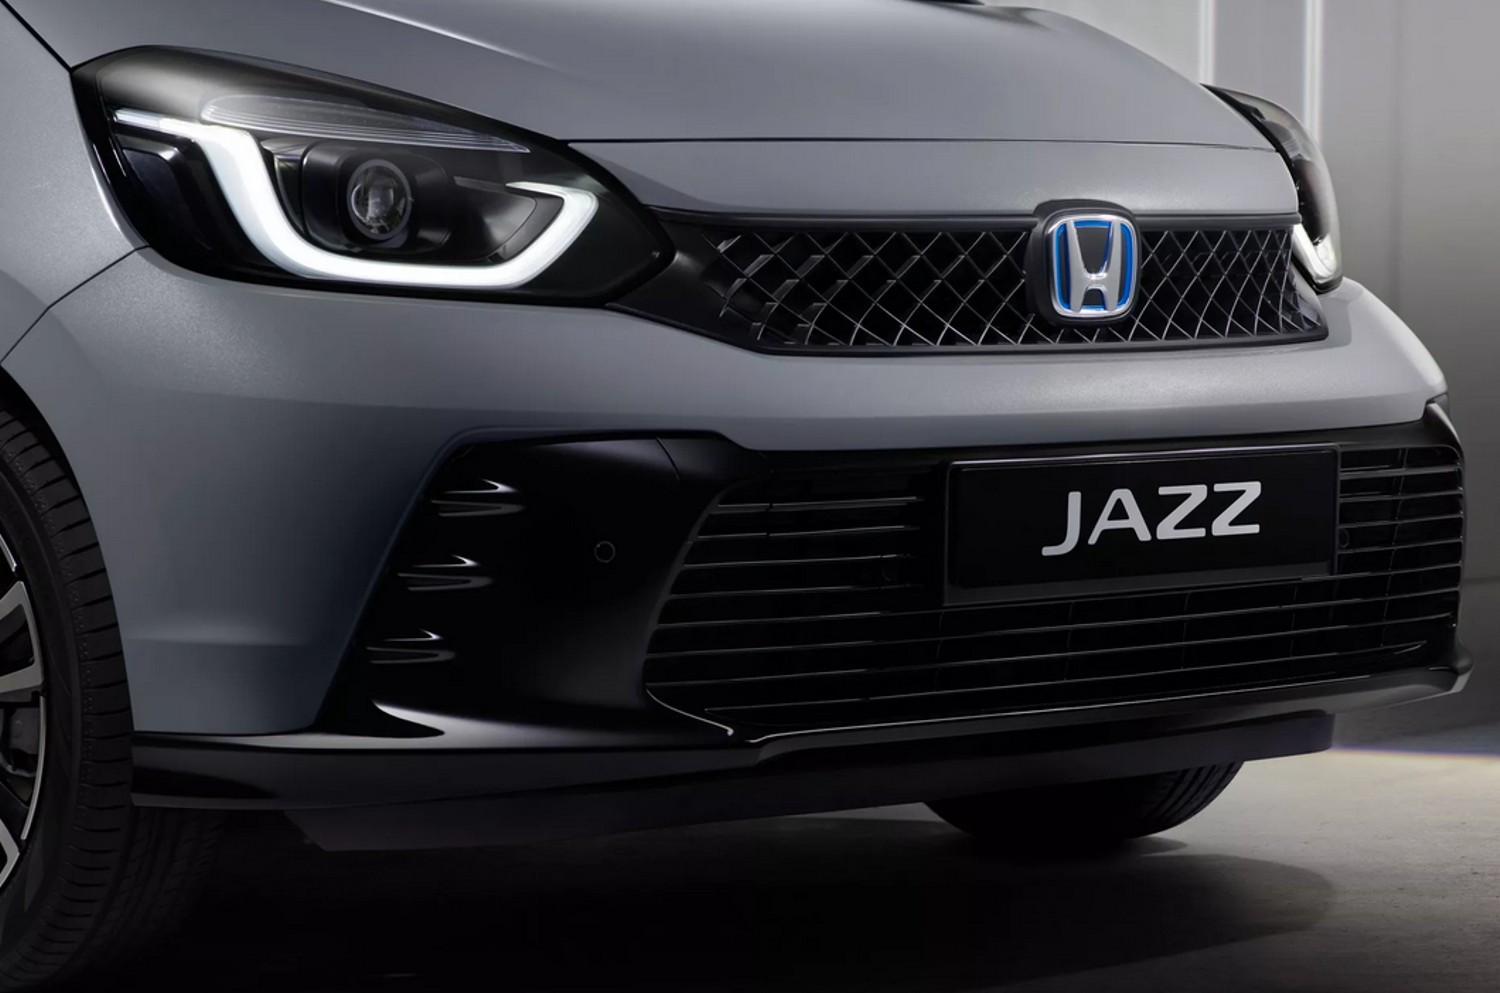 O pára-choques mais esculpido e saliente é um dos aspectos marcantes na renovação do Honda Jazz 